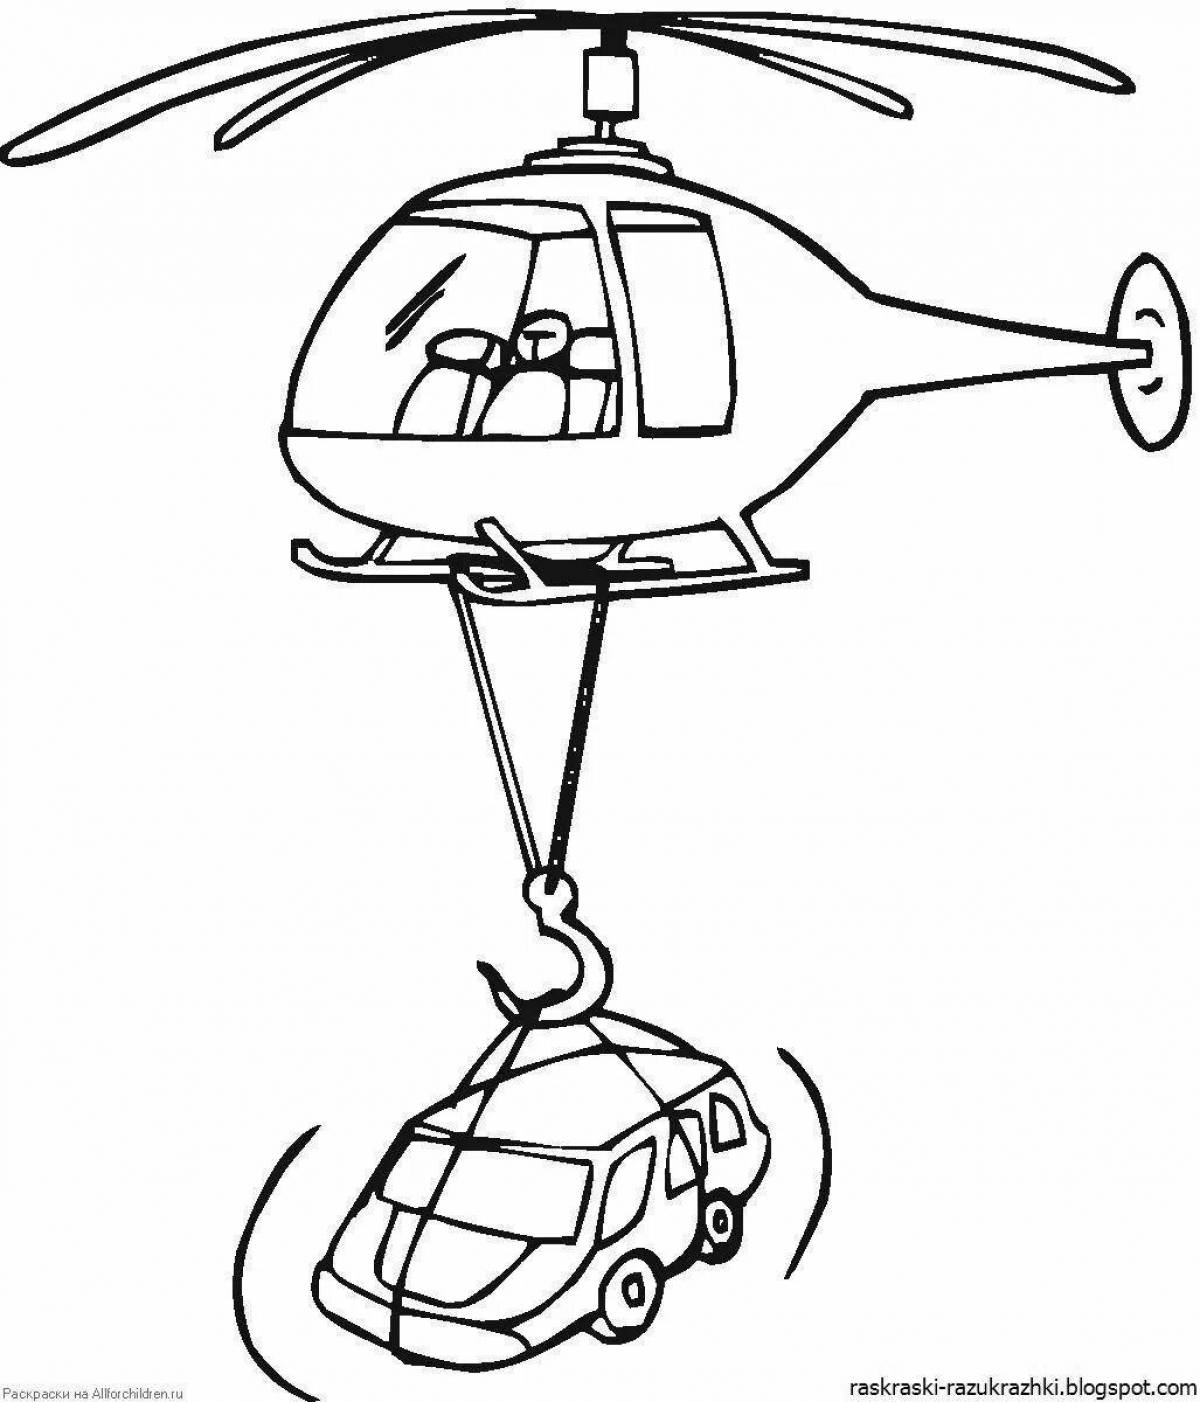 Милая раскраска вертолета для малышей